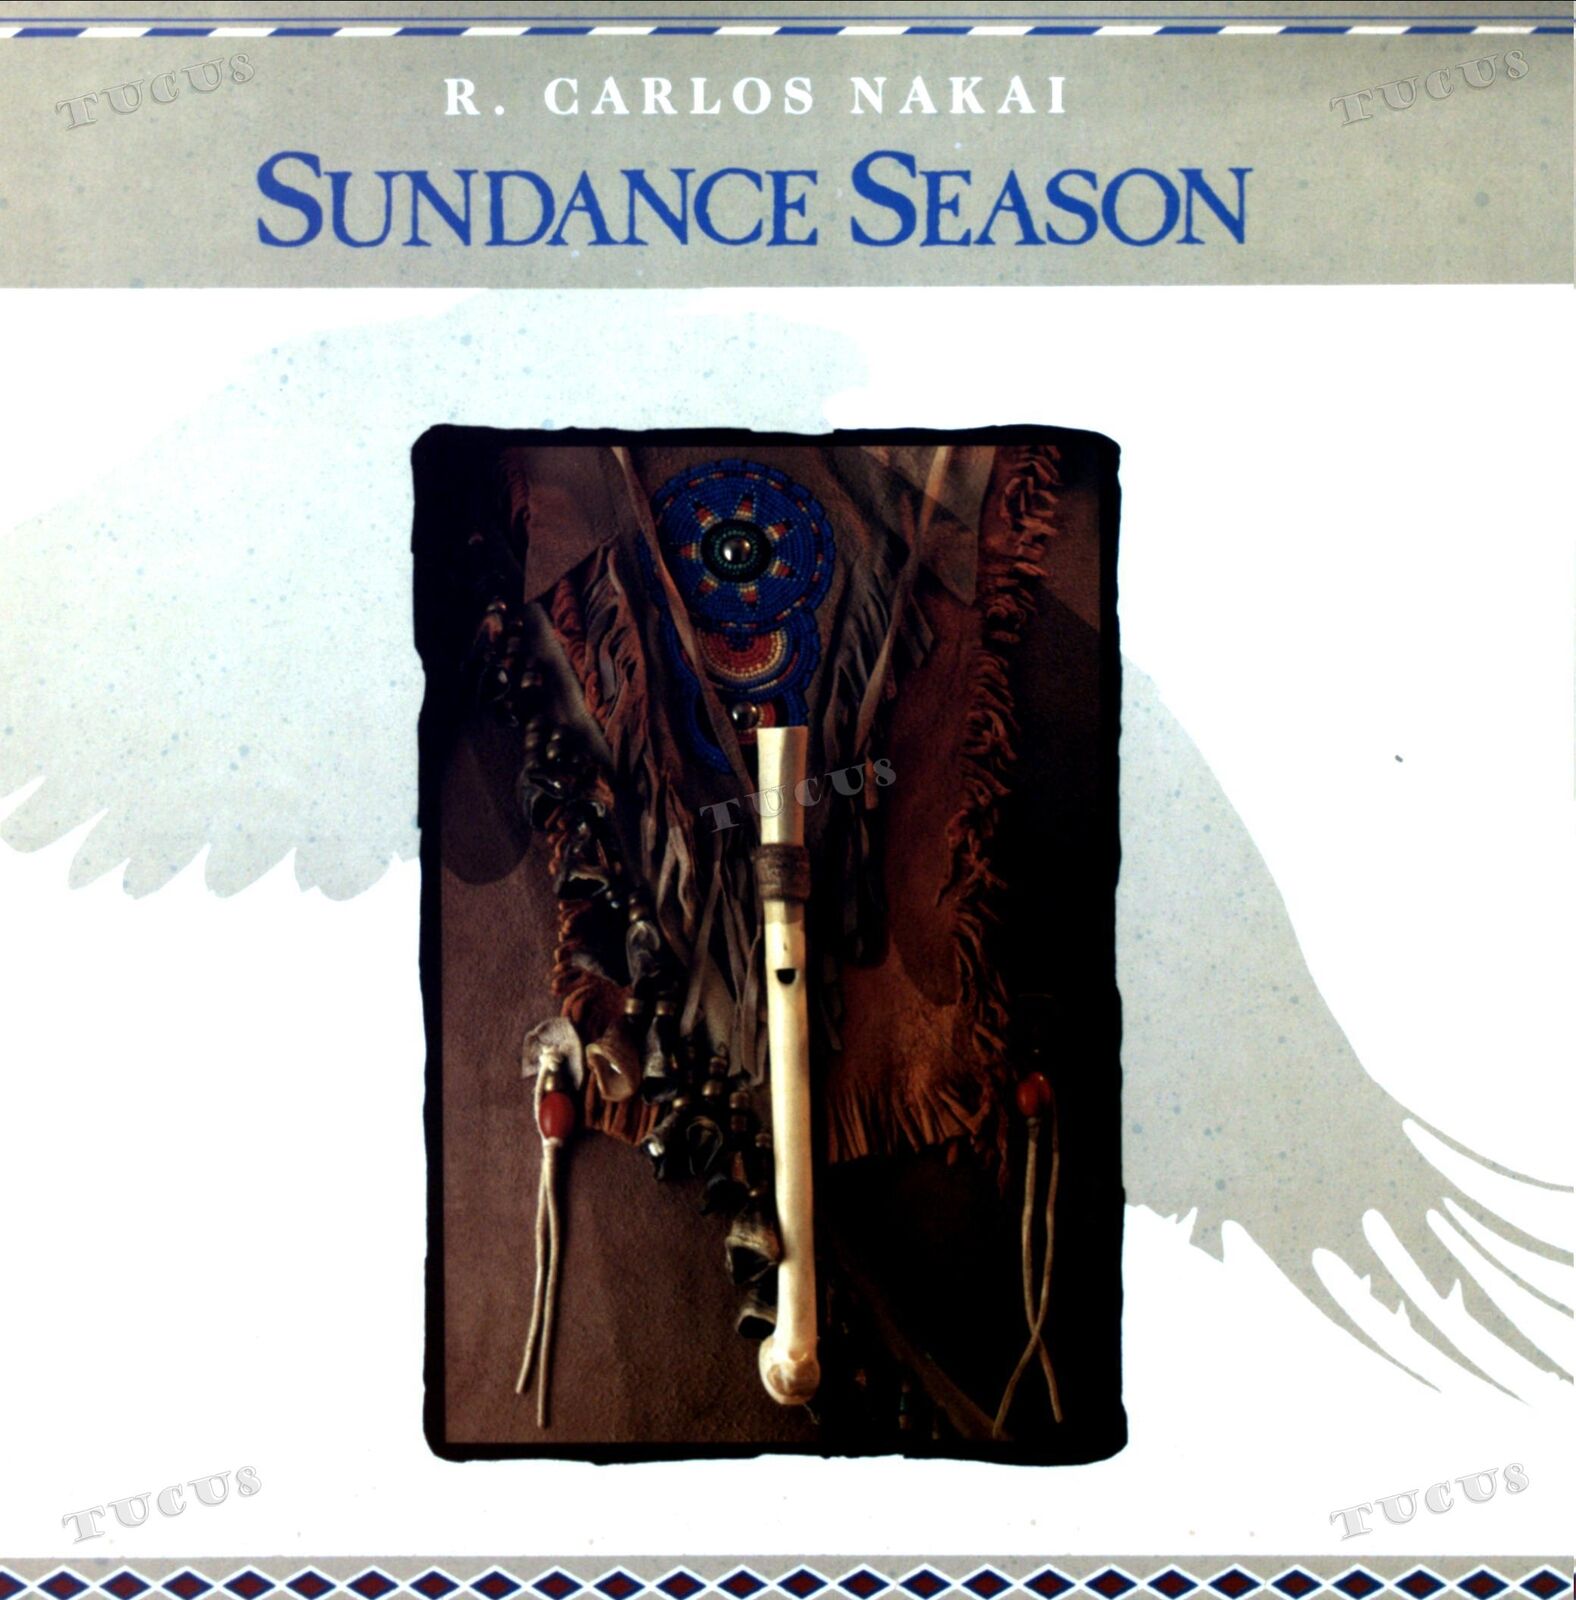 R. Carlos Nakai - Sundance Season LP (VG+/VG+) '*